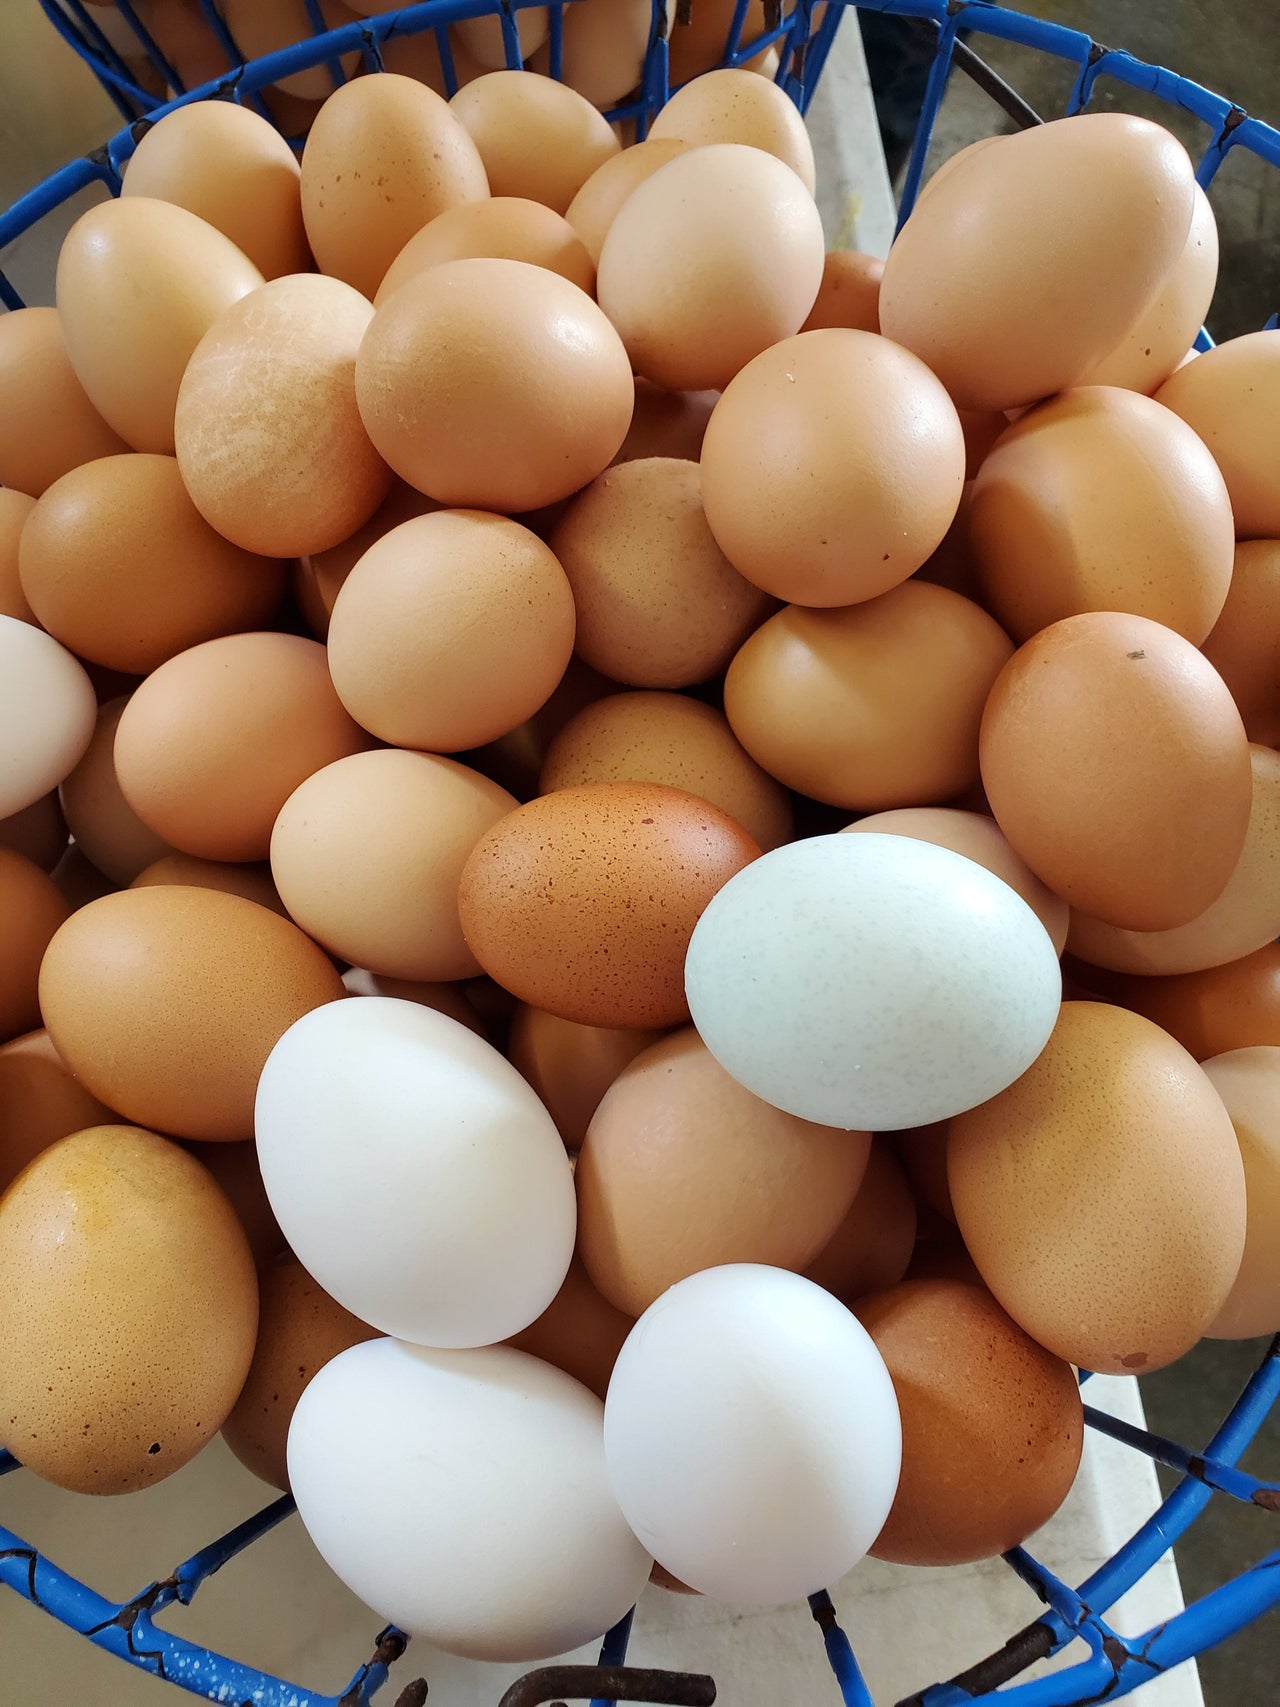 Free Range Chicken Eggs (1 Dozen Brown)